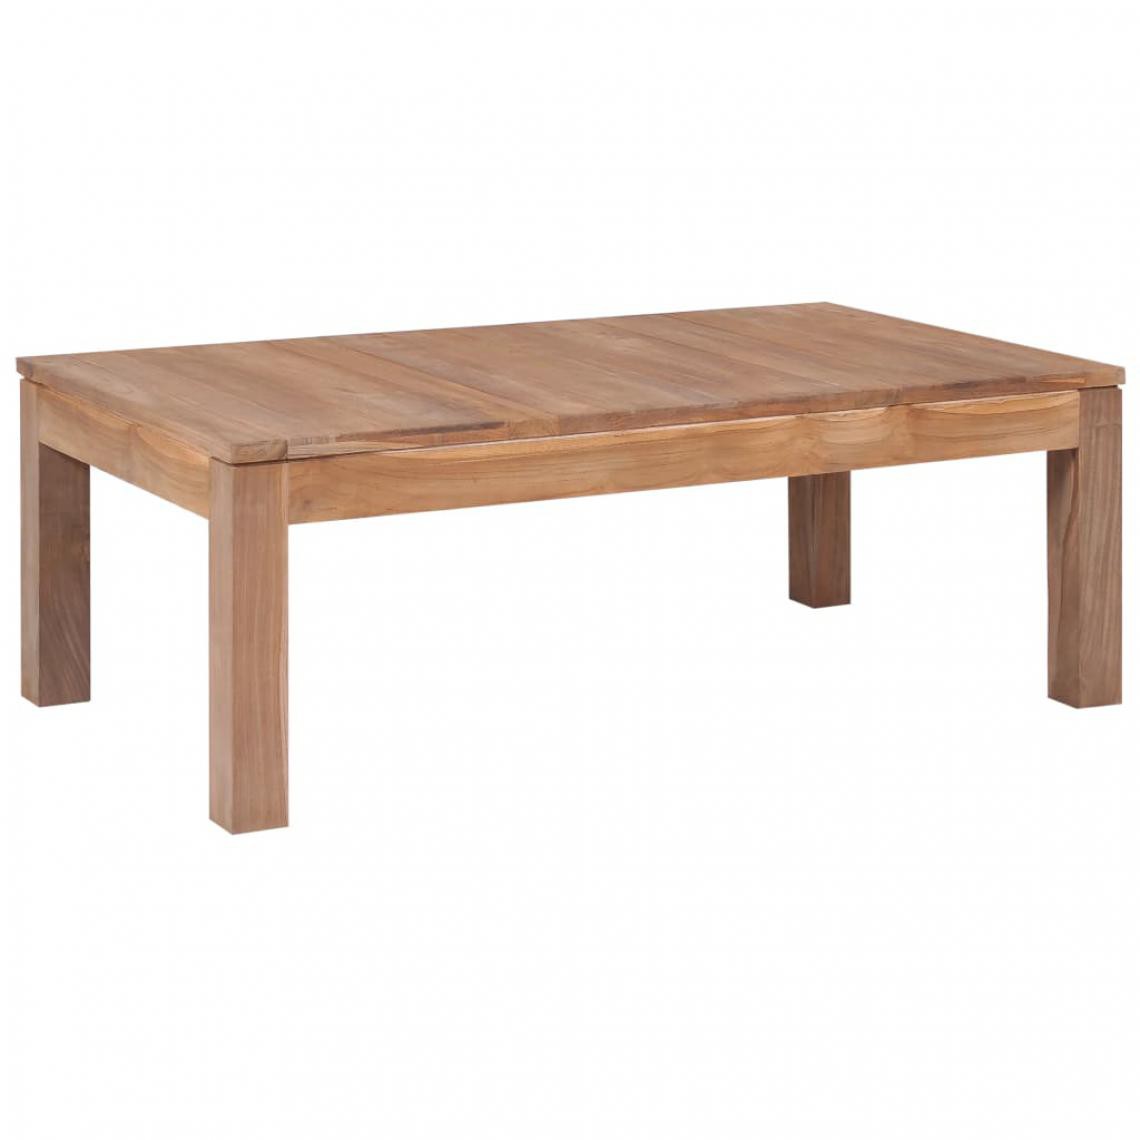 Vidaxl - vidaXL Table basse Bois de teck et finition naturelle 110 x 60 x 40 cm - Tables à manger